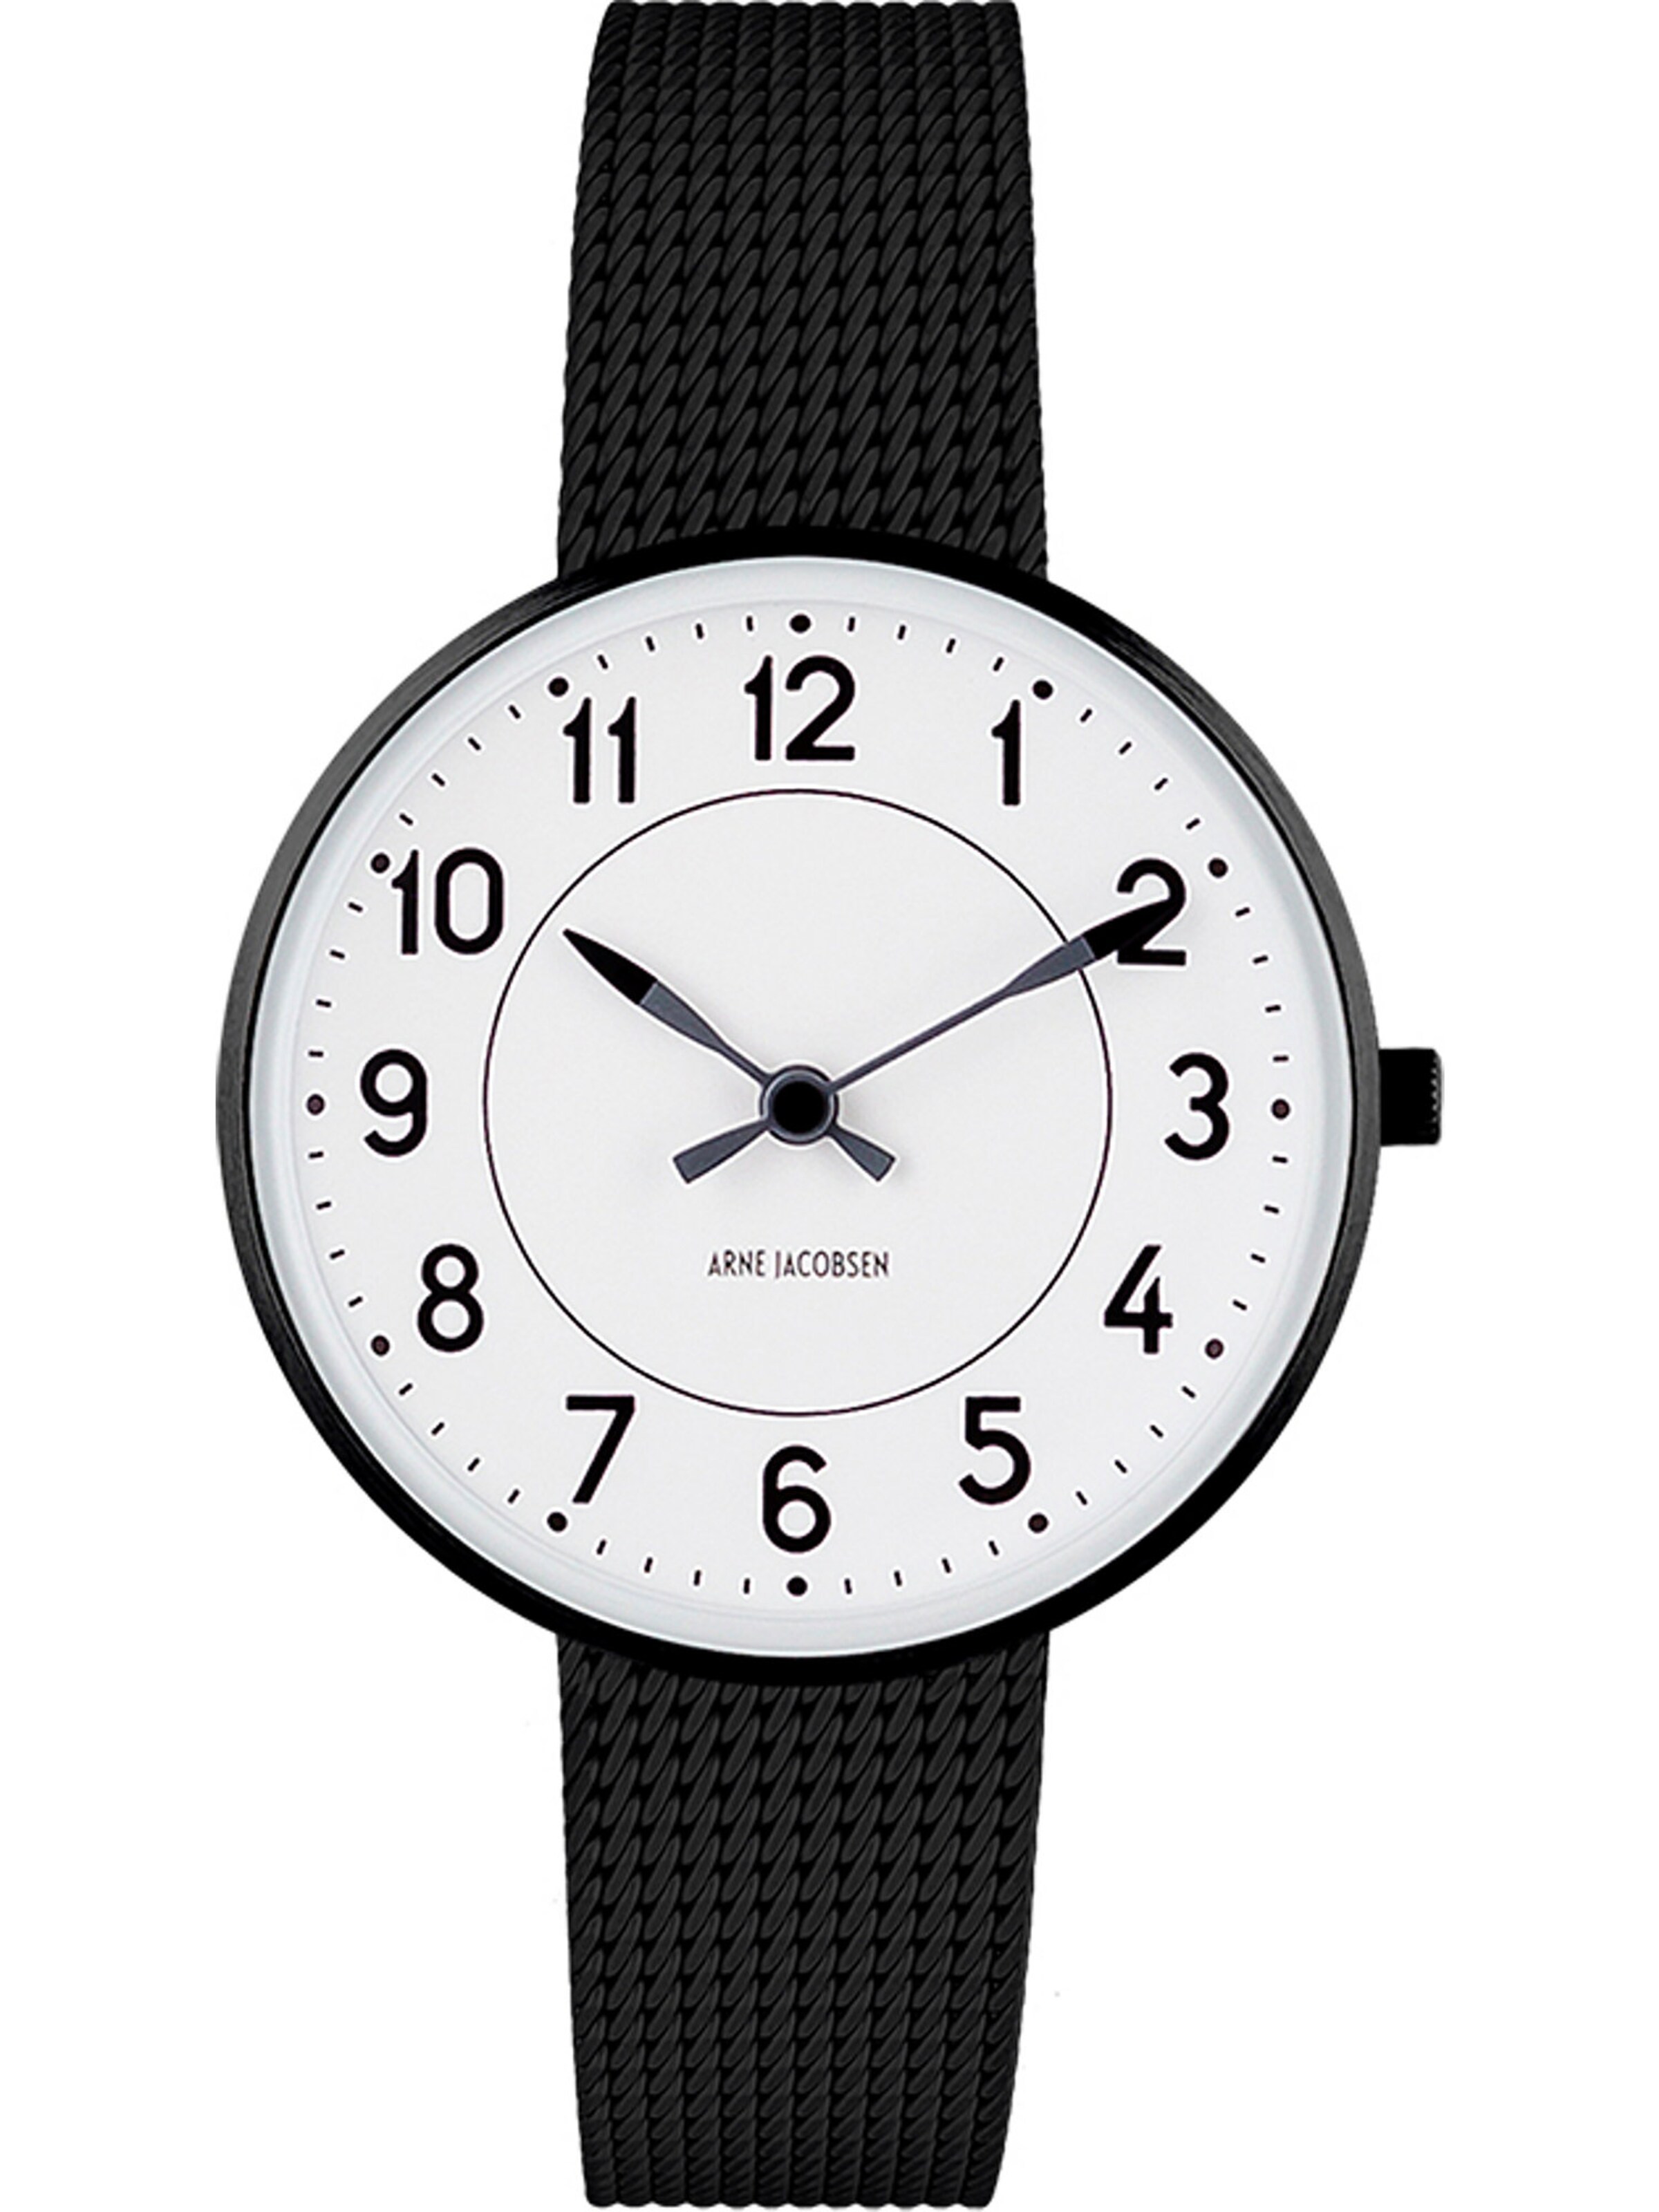 Frauen Uhren Arne Jacobsen Uhr in Schwarz - PP92845